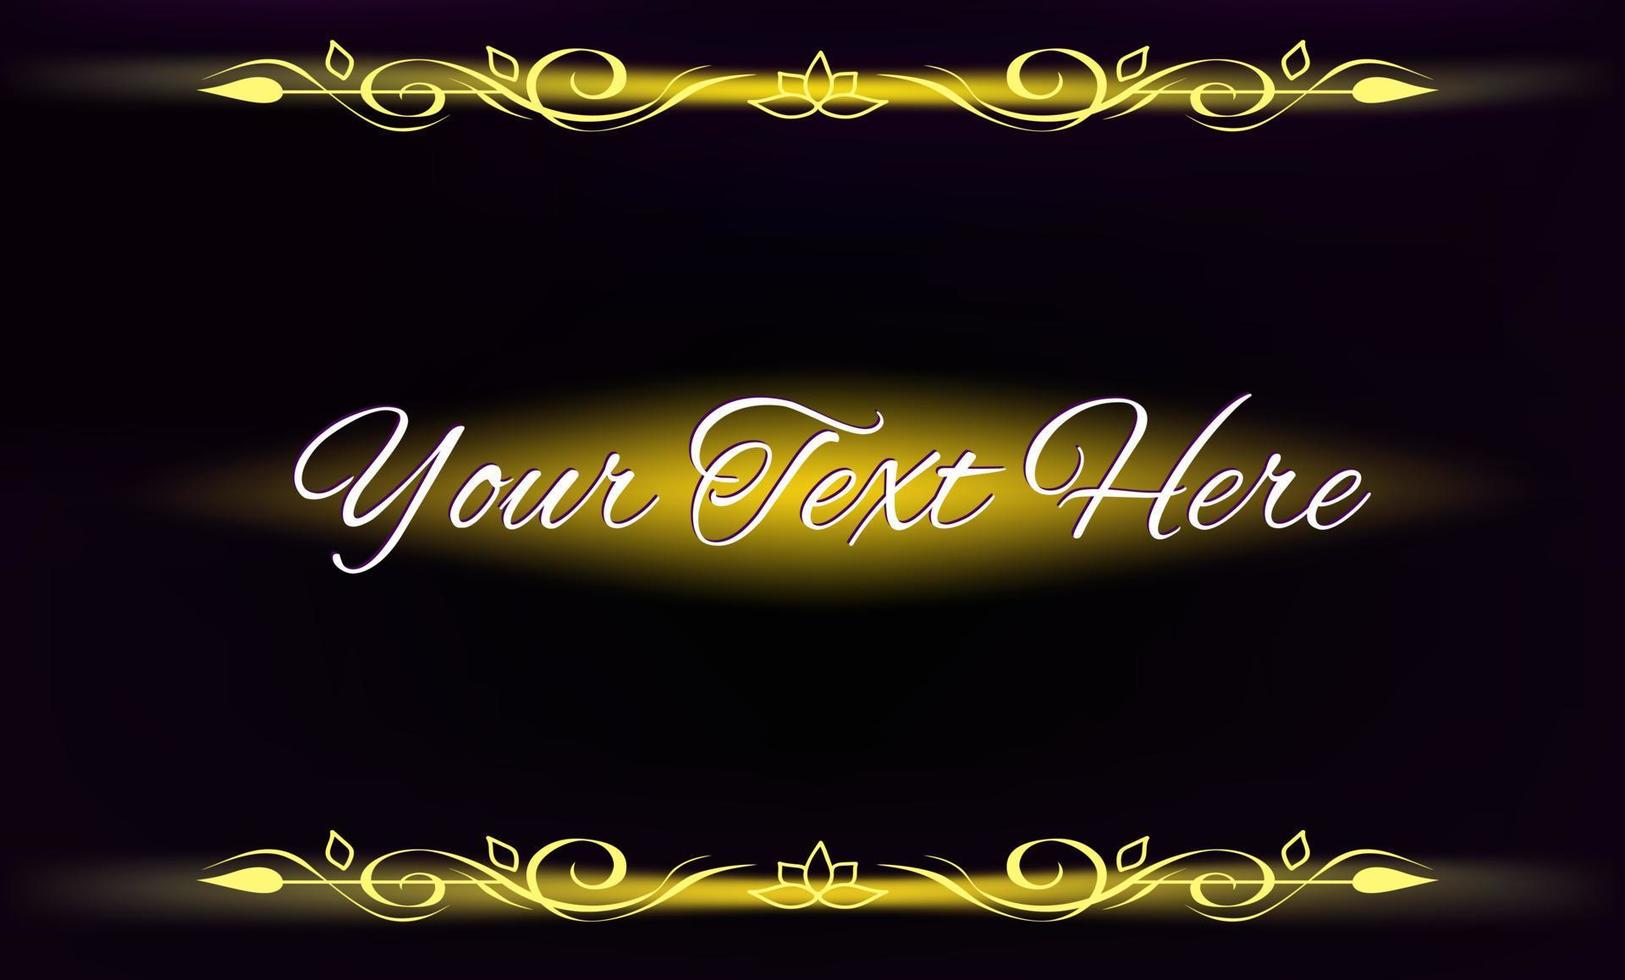 modelo vintage gradiente abstrato de fundo preto com flores de borda desenhadas à mão douradas brilhantes, espaço para texto dourado, espaço para texto, web, impressões de folheto, folheto, brochura, saudação, convite, etiqueta vetor